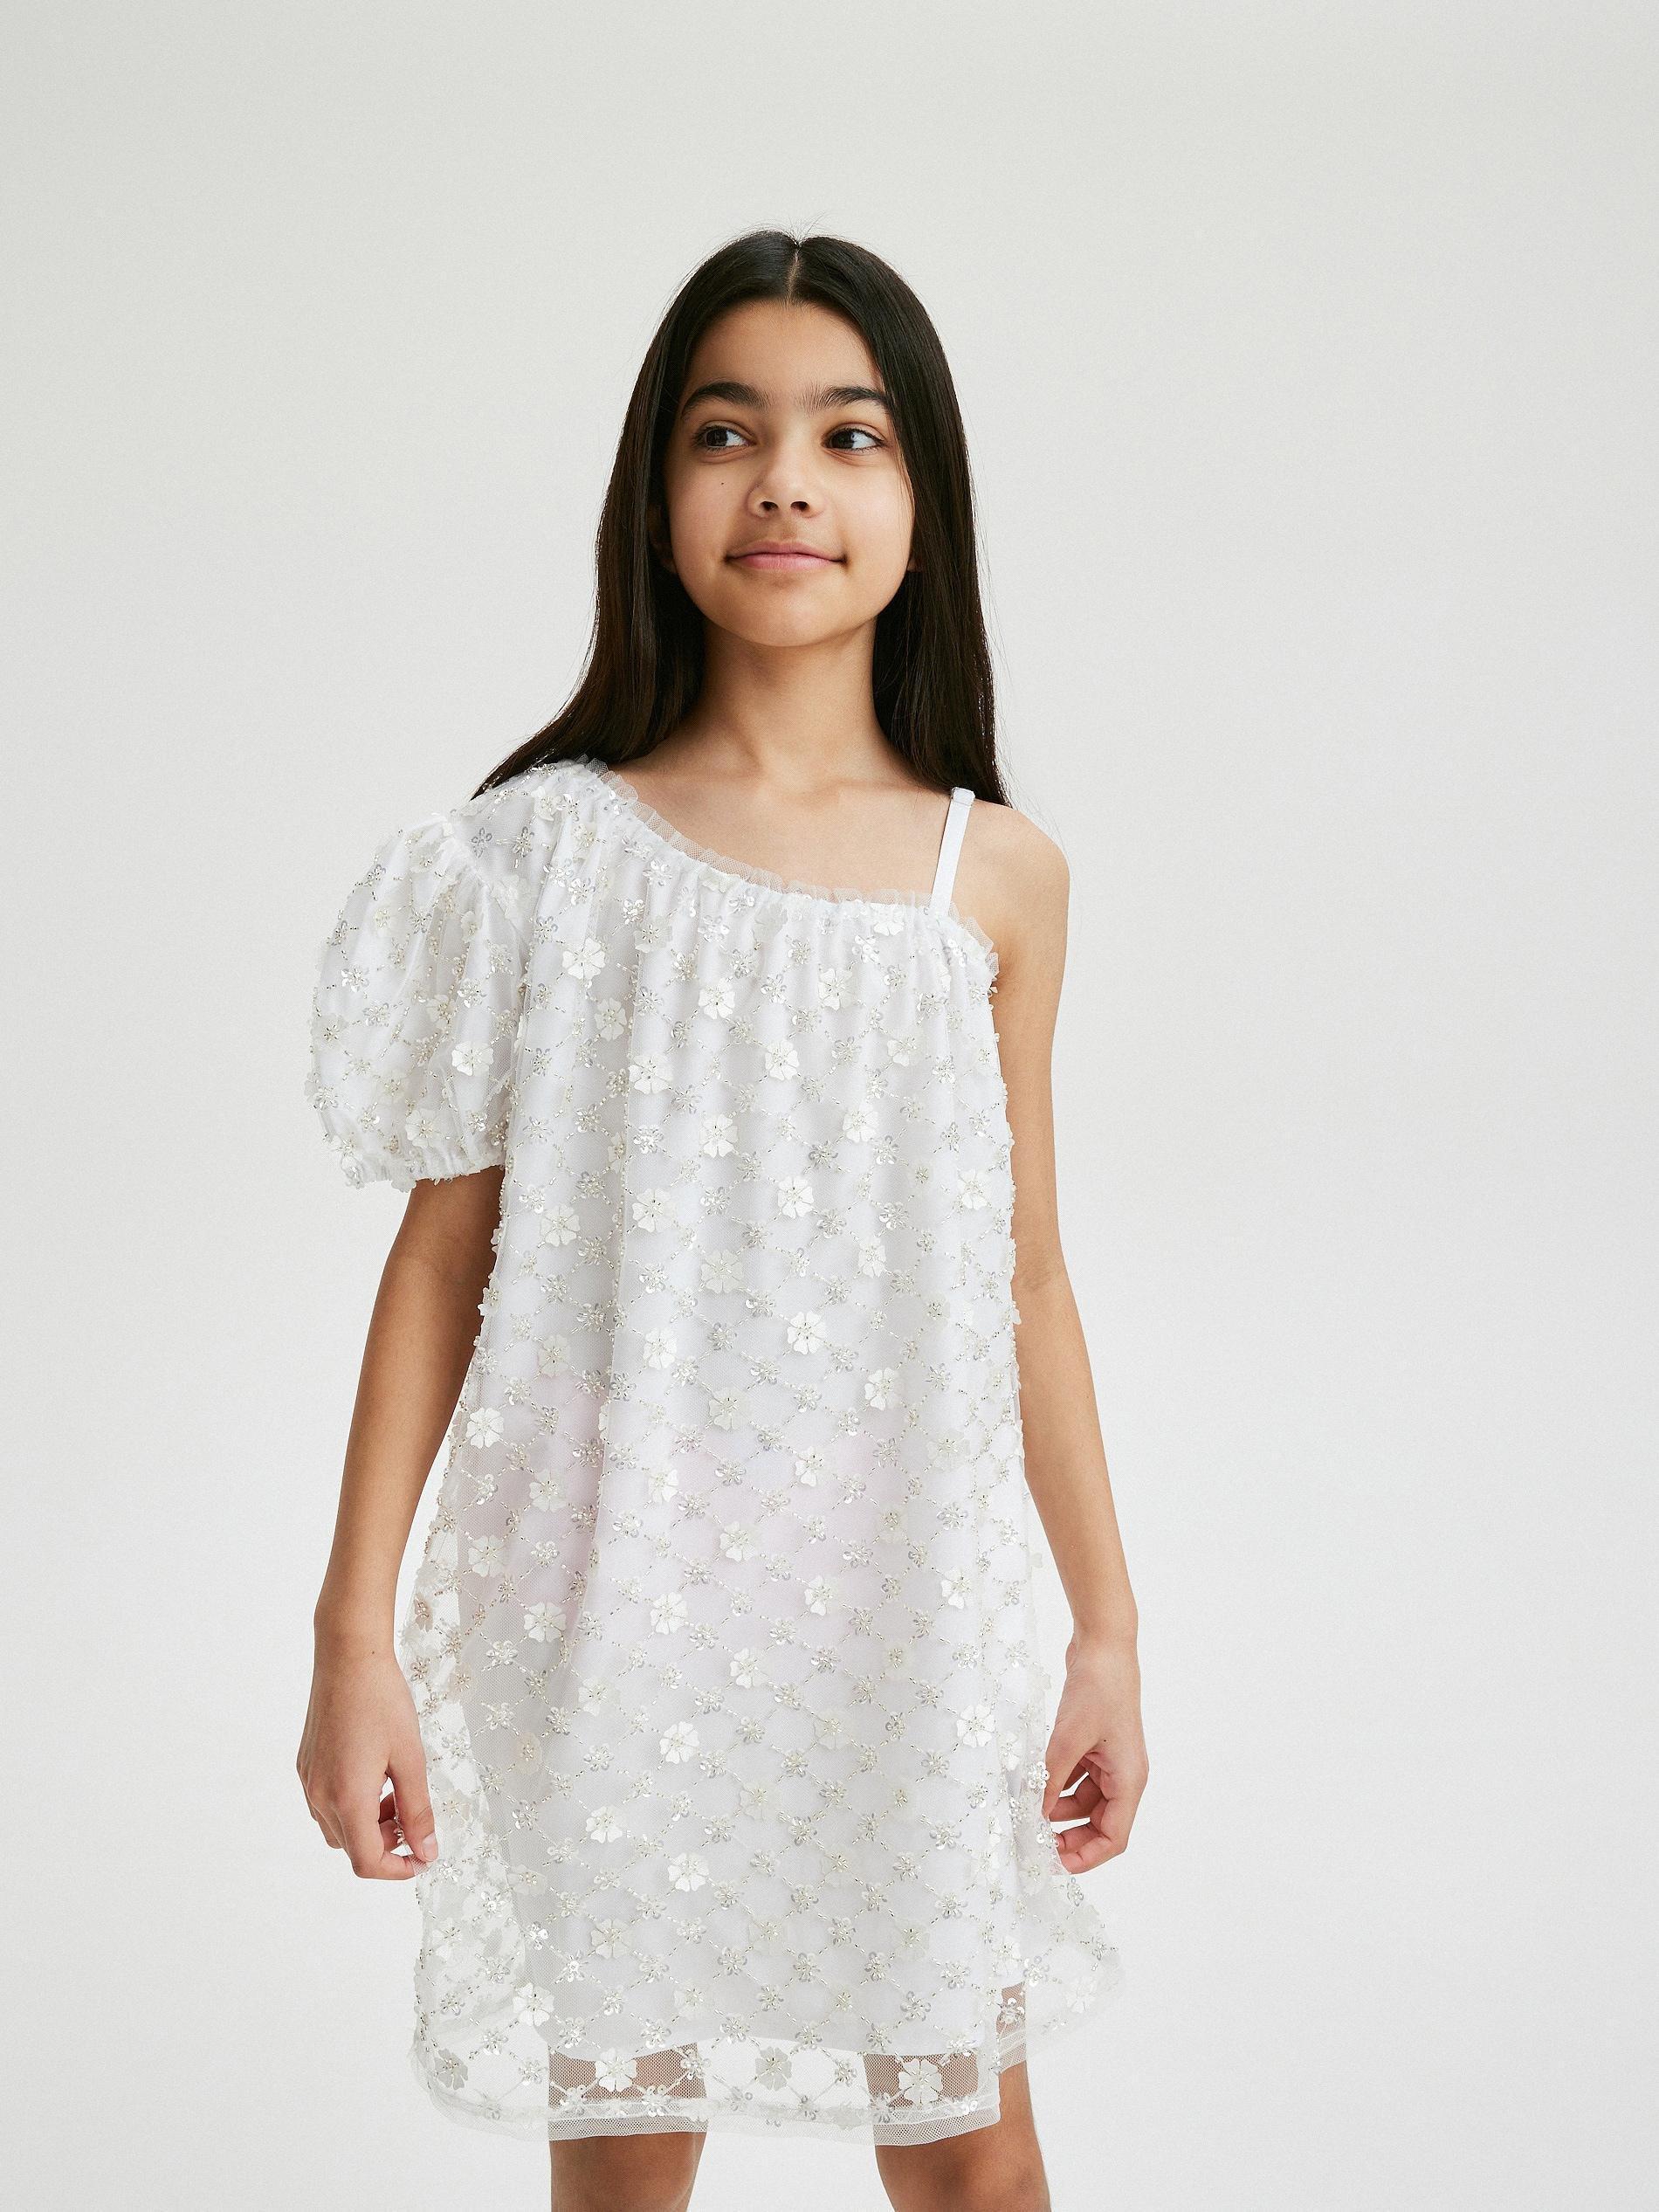 Reserved - White Sequin Dress, Kids Girls